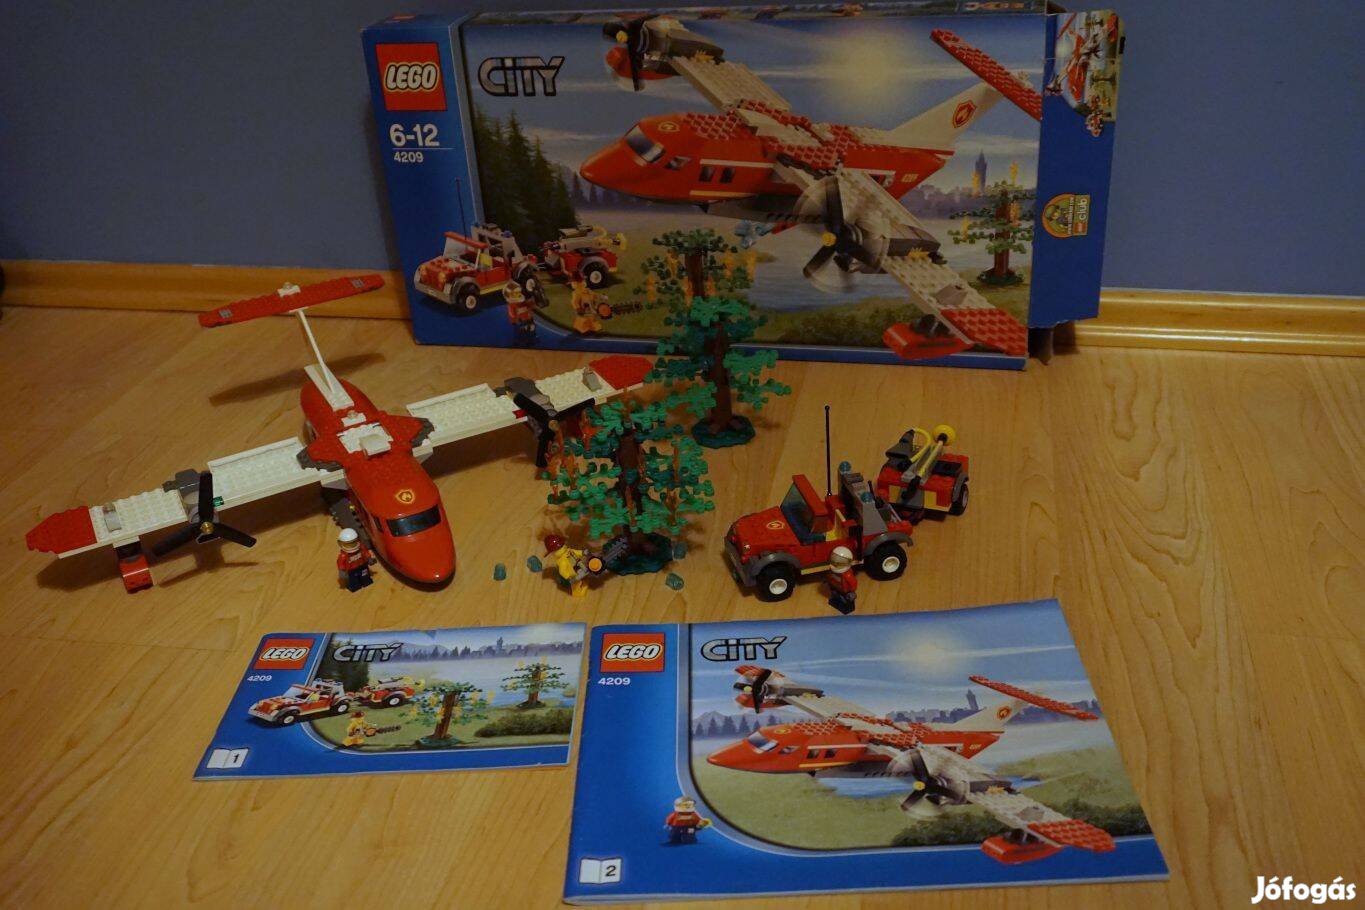 Lego City 4209 - Tűzoltó repülőgép